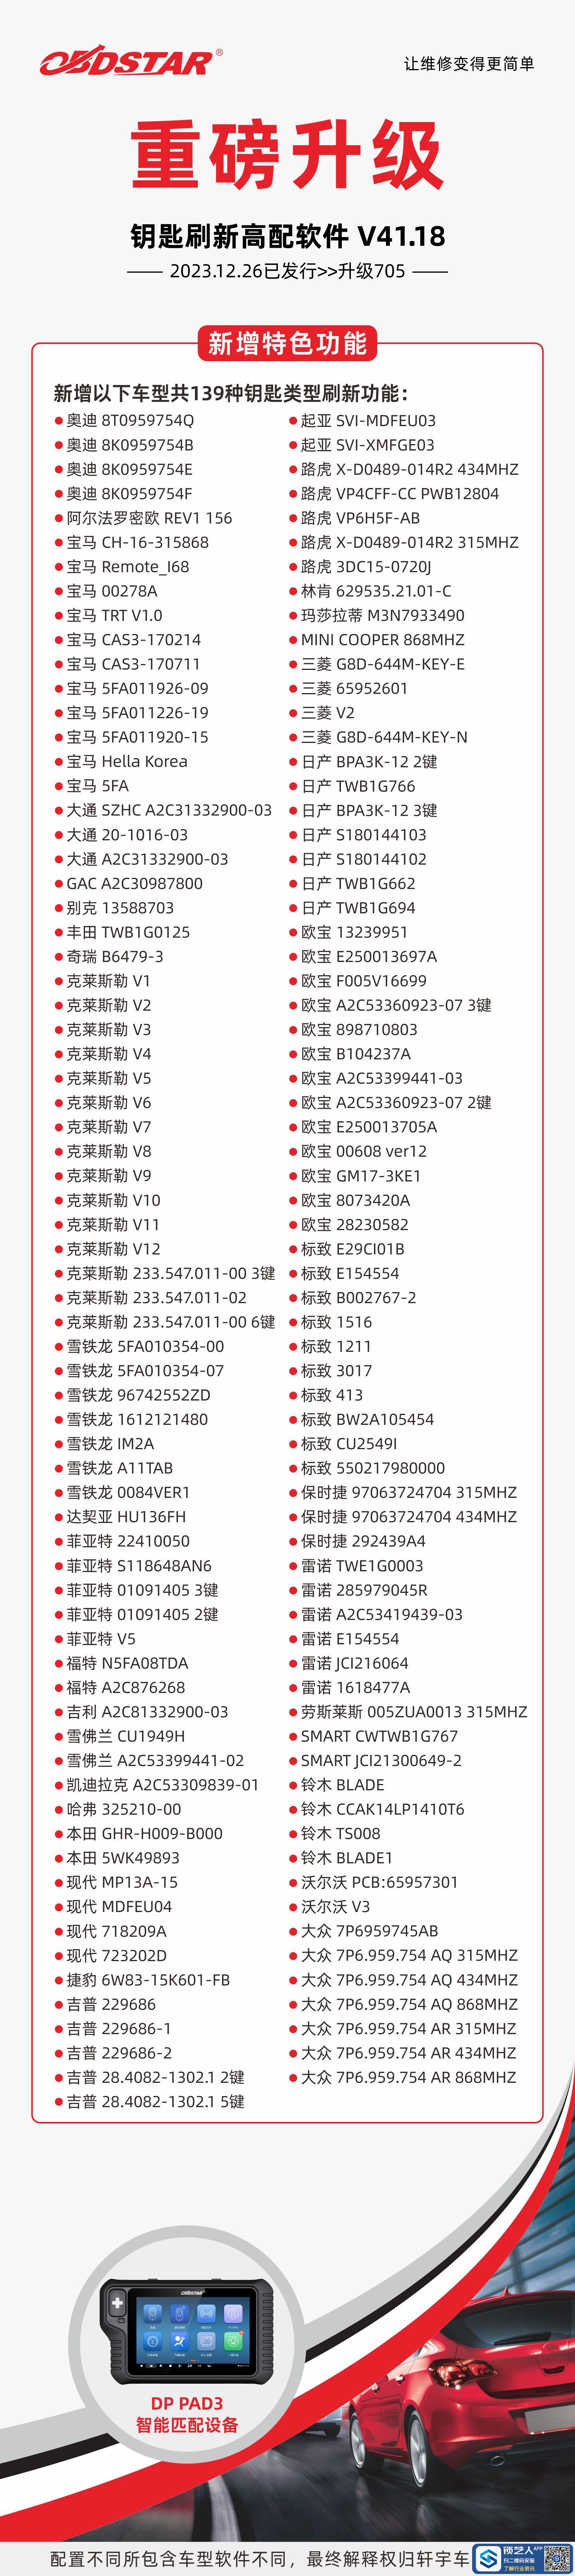 1227升级海报-DP-PAD3-钥匙刷新(5).jpg